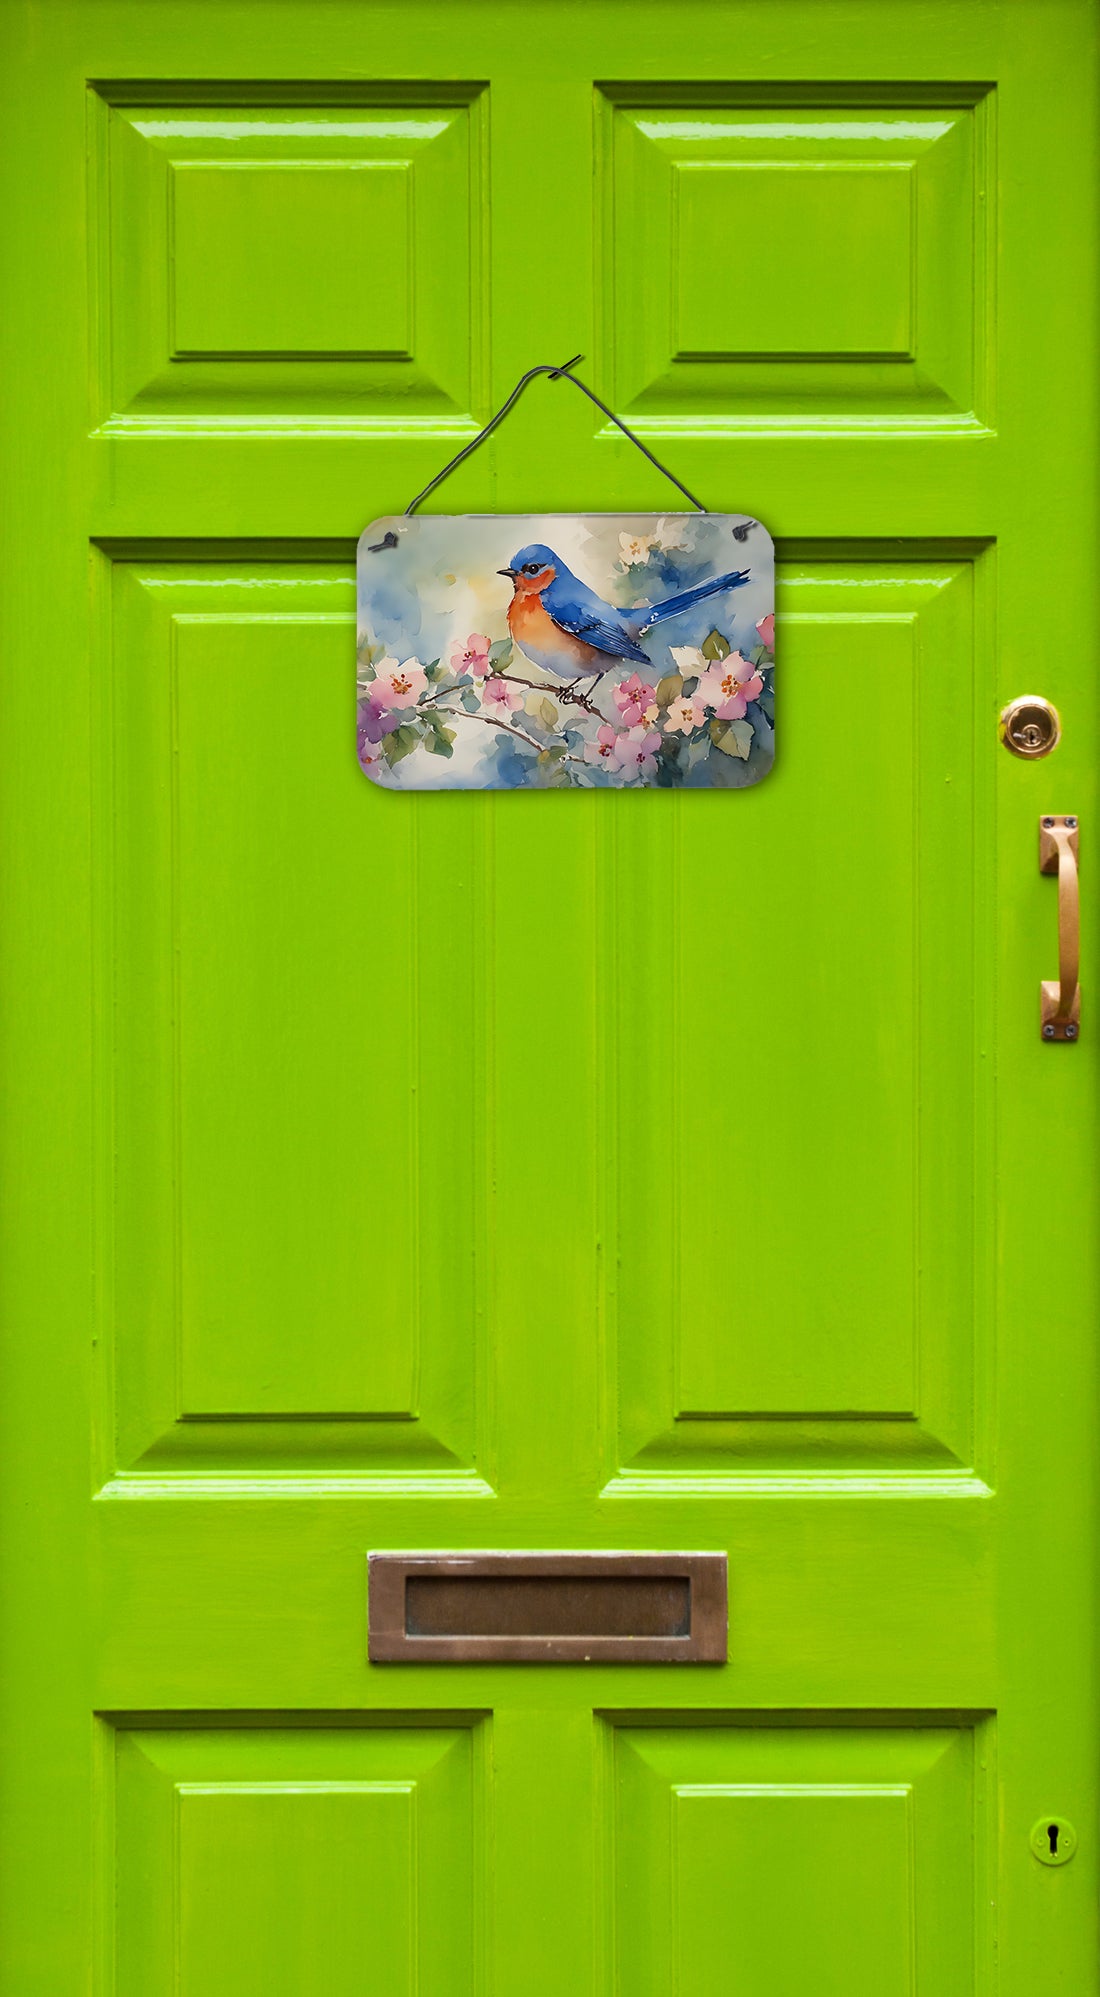 Buy this Bluebird Wall or Door Hanging Prints